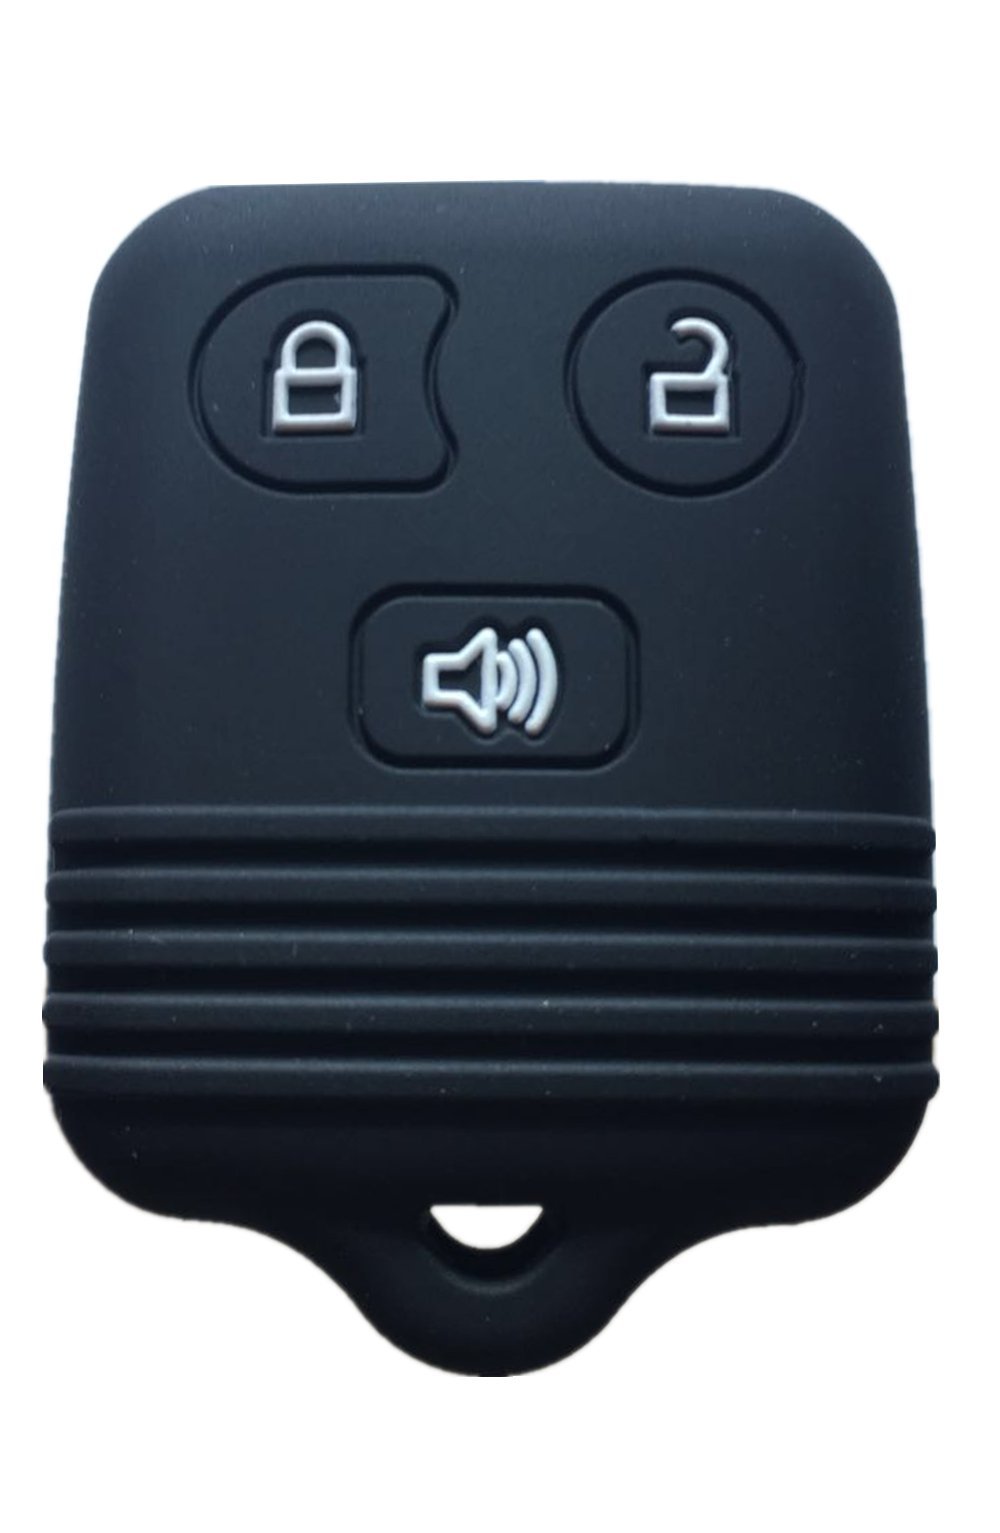  [AUSTRALIA] - Rpkey Silicone Keyless Entry Remote Control Key Fob Cover Case protector For Ford Lincoln Mercury Mazda CWTWB1U331 GQ43VT11T CWTWB1U345 8L3Z15K601B 8L-3Z-15K-601B